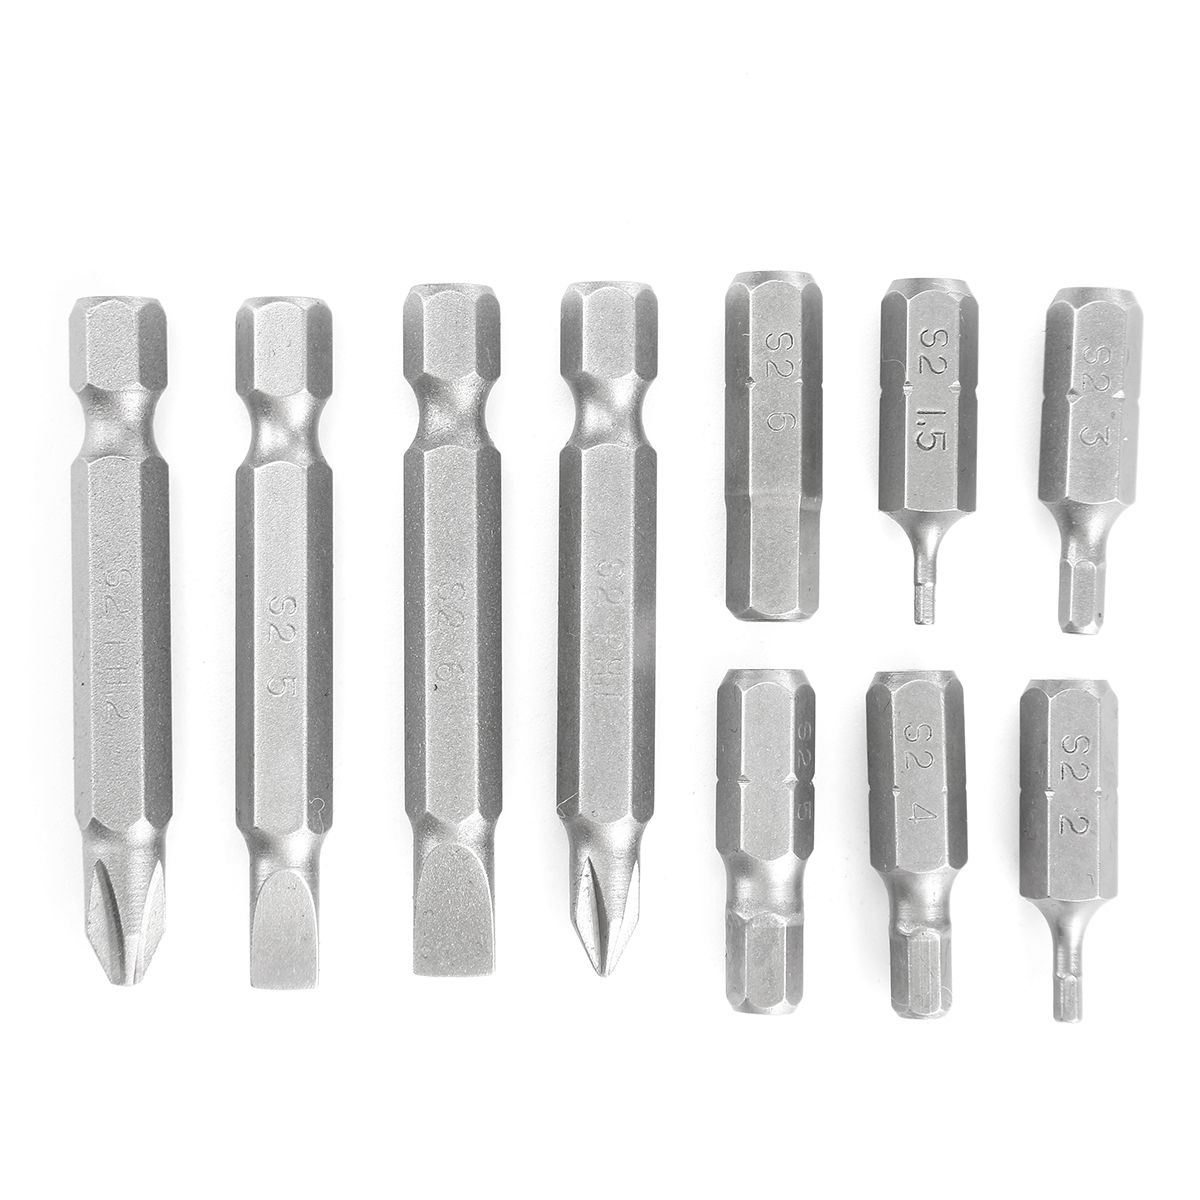 PENGGONG-0634-11pcs-Batch-Tsui-Kit-Mini-Screwdriver-Bits-For-Repair-Tools-1326766